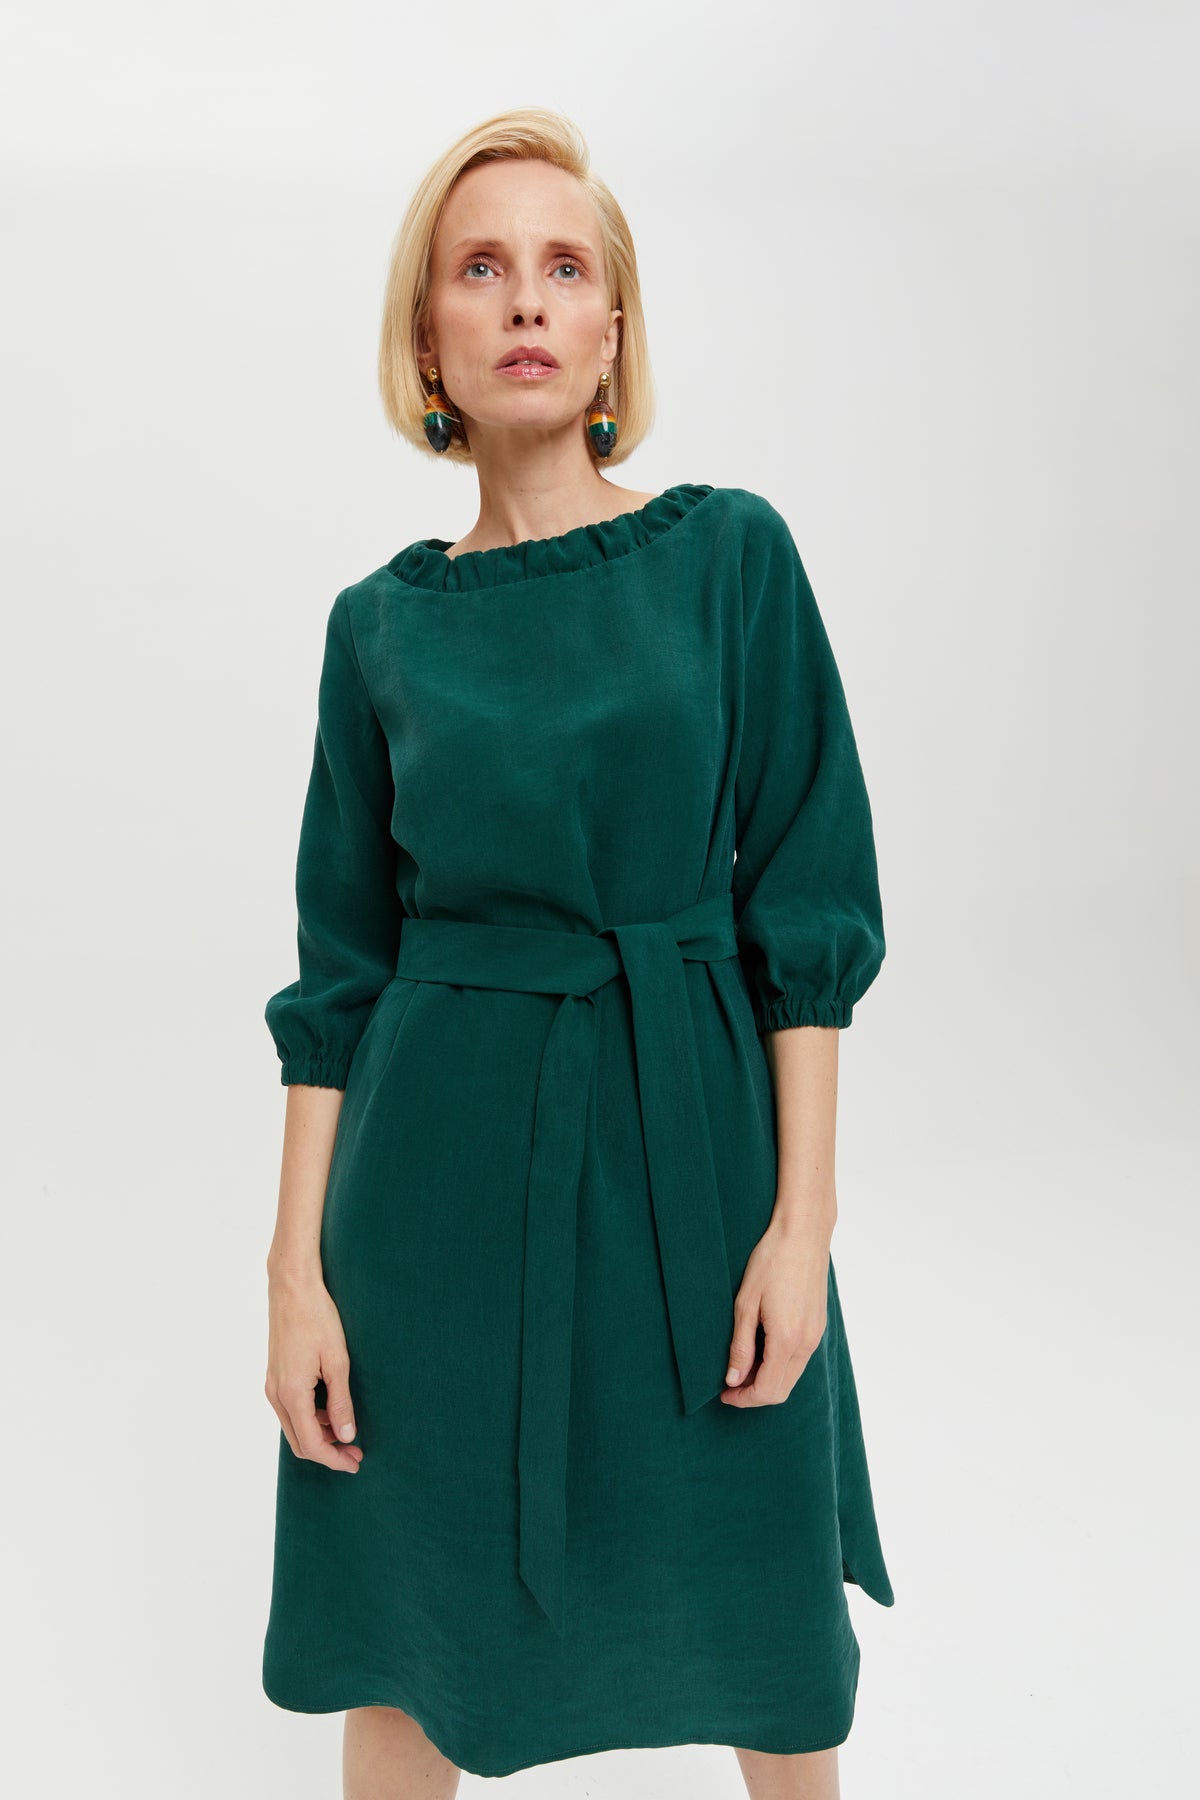 Celine | Elegant Belted Dress with Neckline Element in Forest Green